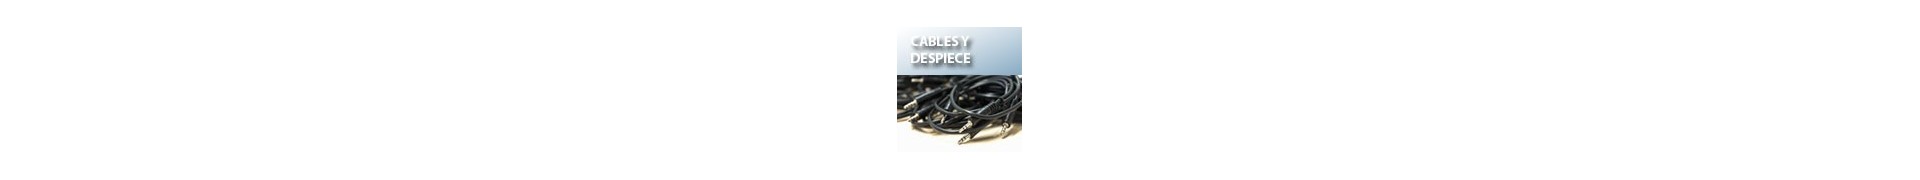 Cables y despiece